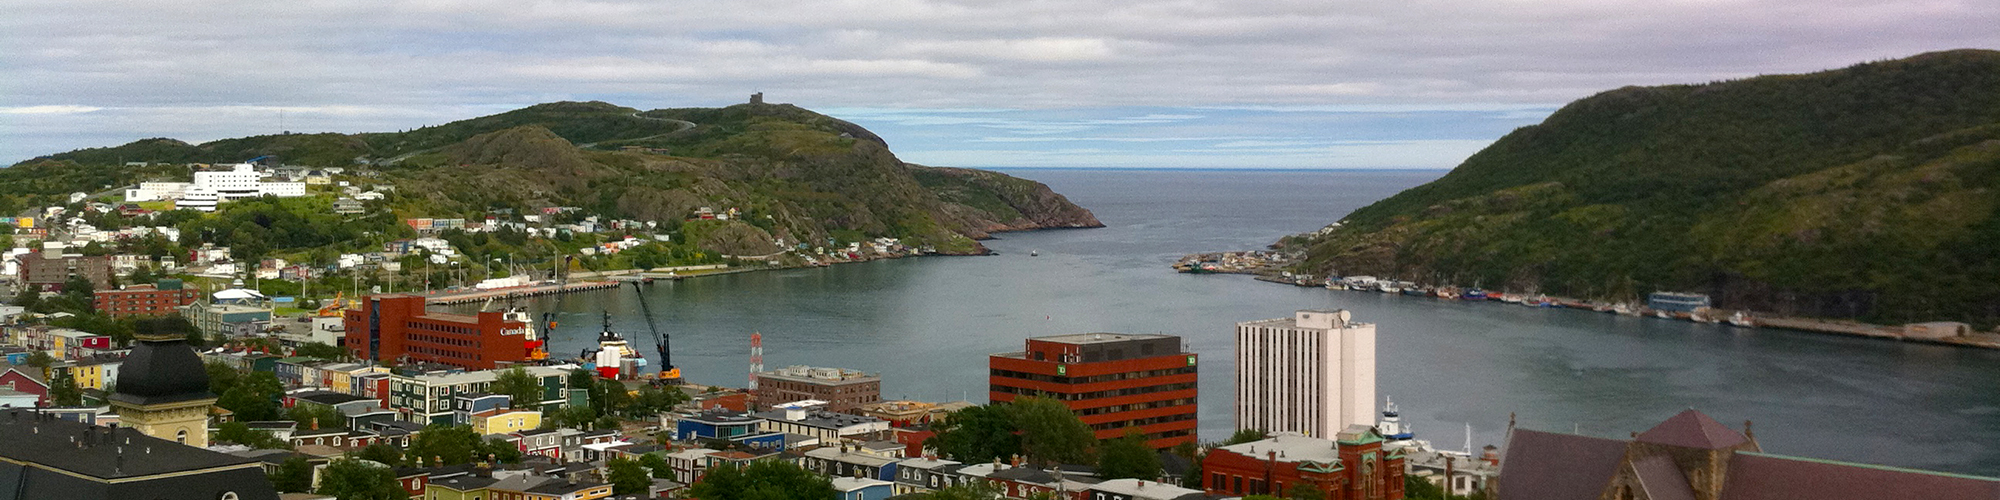 St. John’s, Newfoundland & Labrador